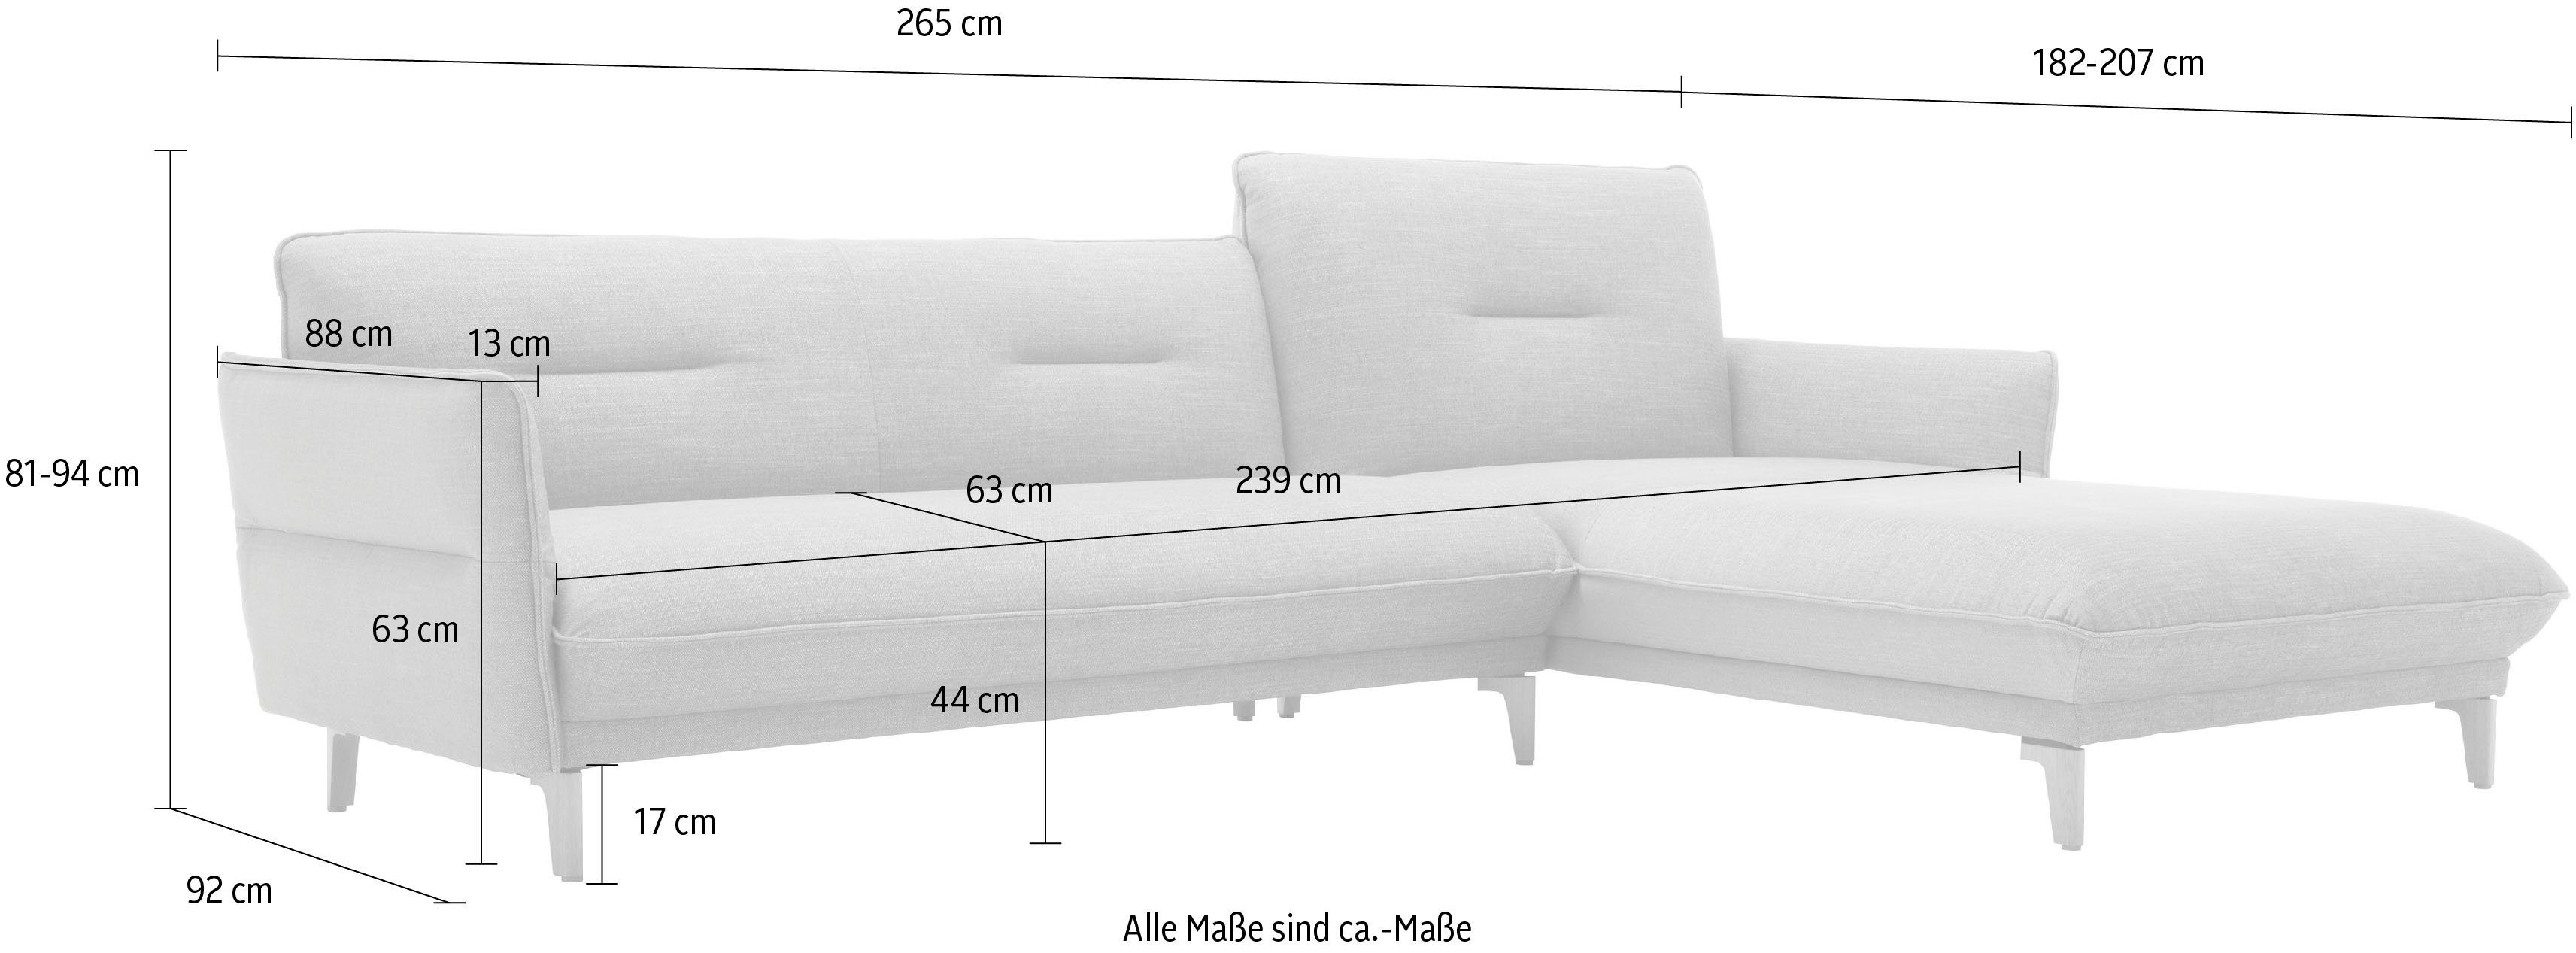 hs.430, Ecksofa 265 068-20 beige mit Recamiere hülsta cm Rücken sofa hoher Neigefunktion, Breite